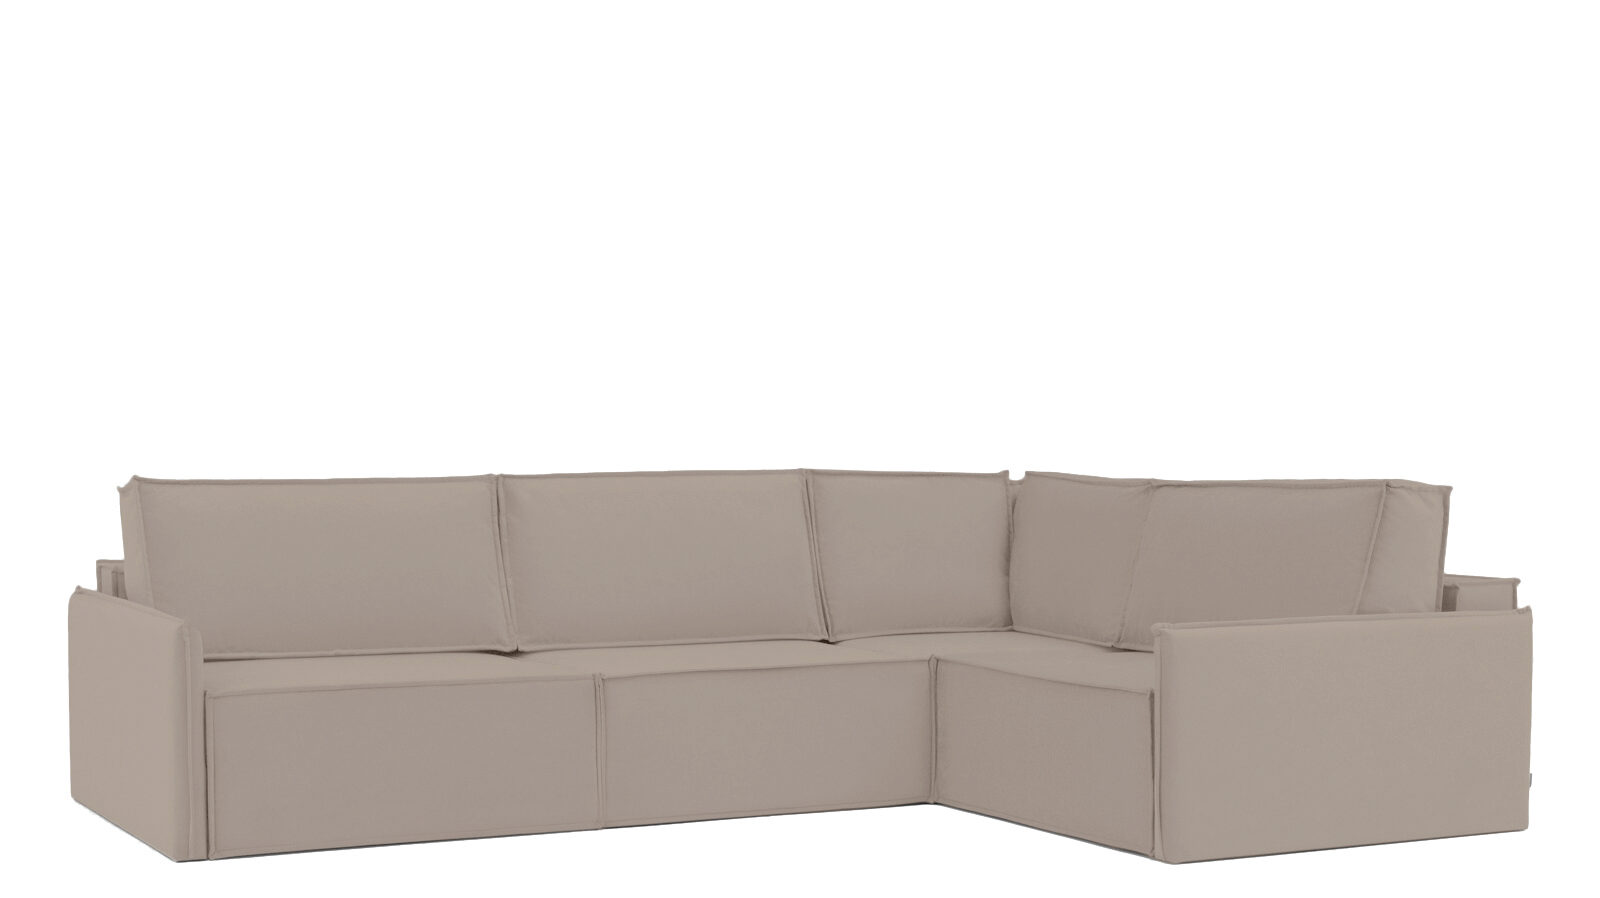 Угловой диван Klark 4 секционный с узкими подлокотниками четыре дамы и молодой человек в вакууме нестандартные задачи обо всем на свете